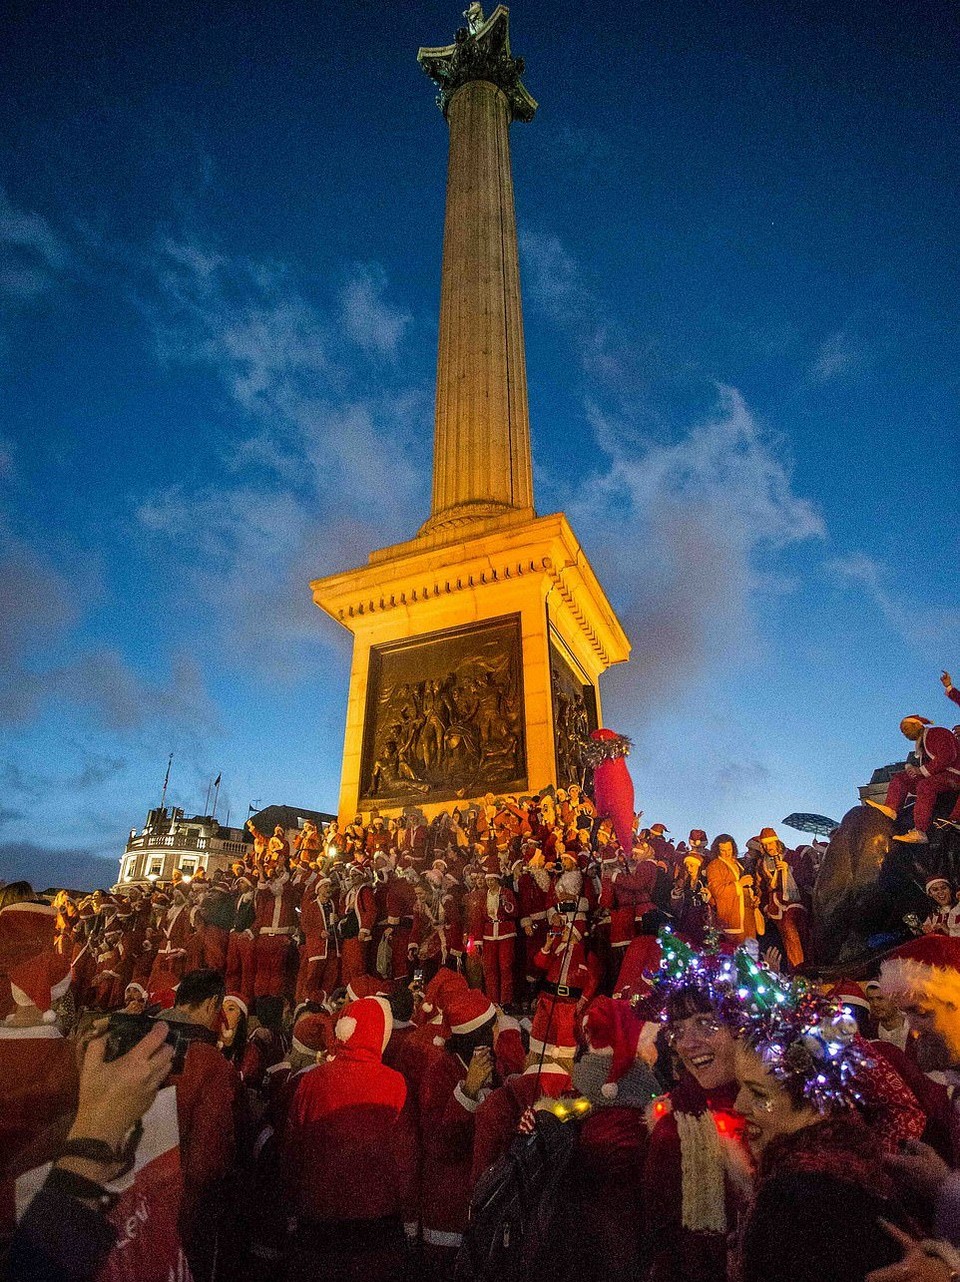 Santacon London 2018: грандиозная попойка Санта-Клаусов в Лондоне